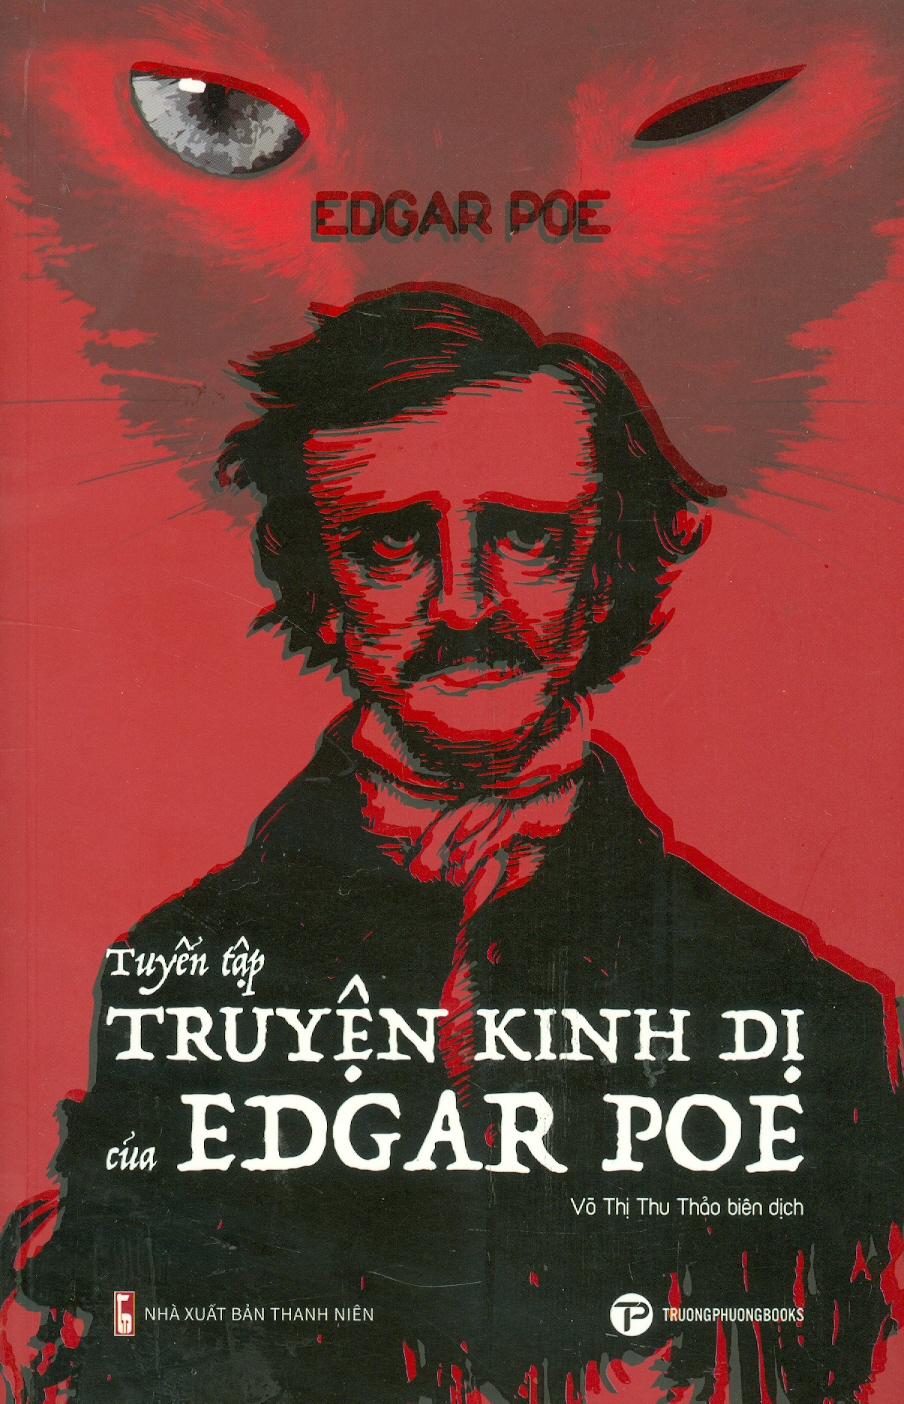 TUYỂN TẬP TRUYỆN KINH DỊ CỦA EDGAR POE – Edgar Allan Poe – dịch giả Võ Thị Thu Thảo – Trường Phương Books